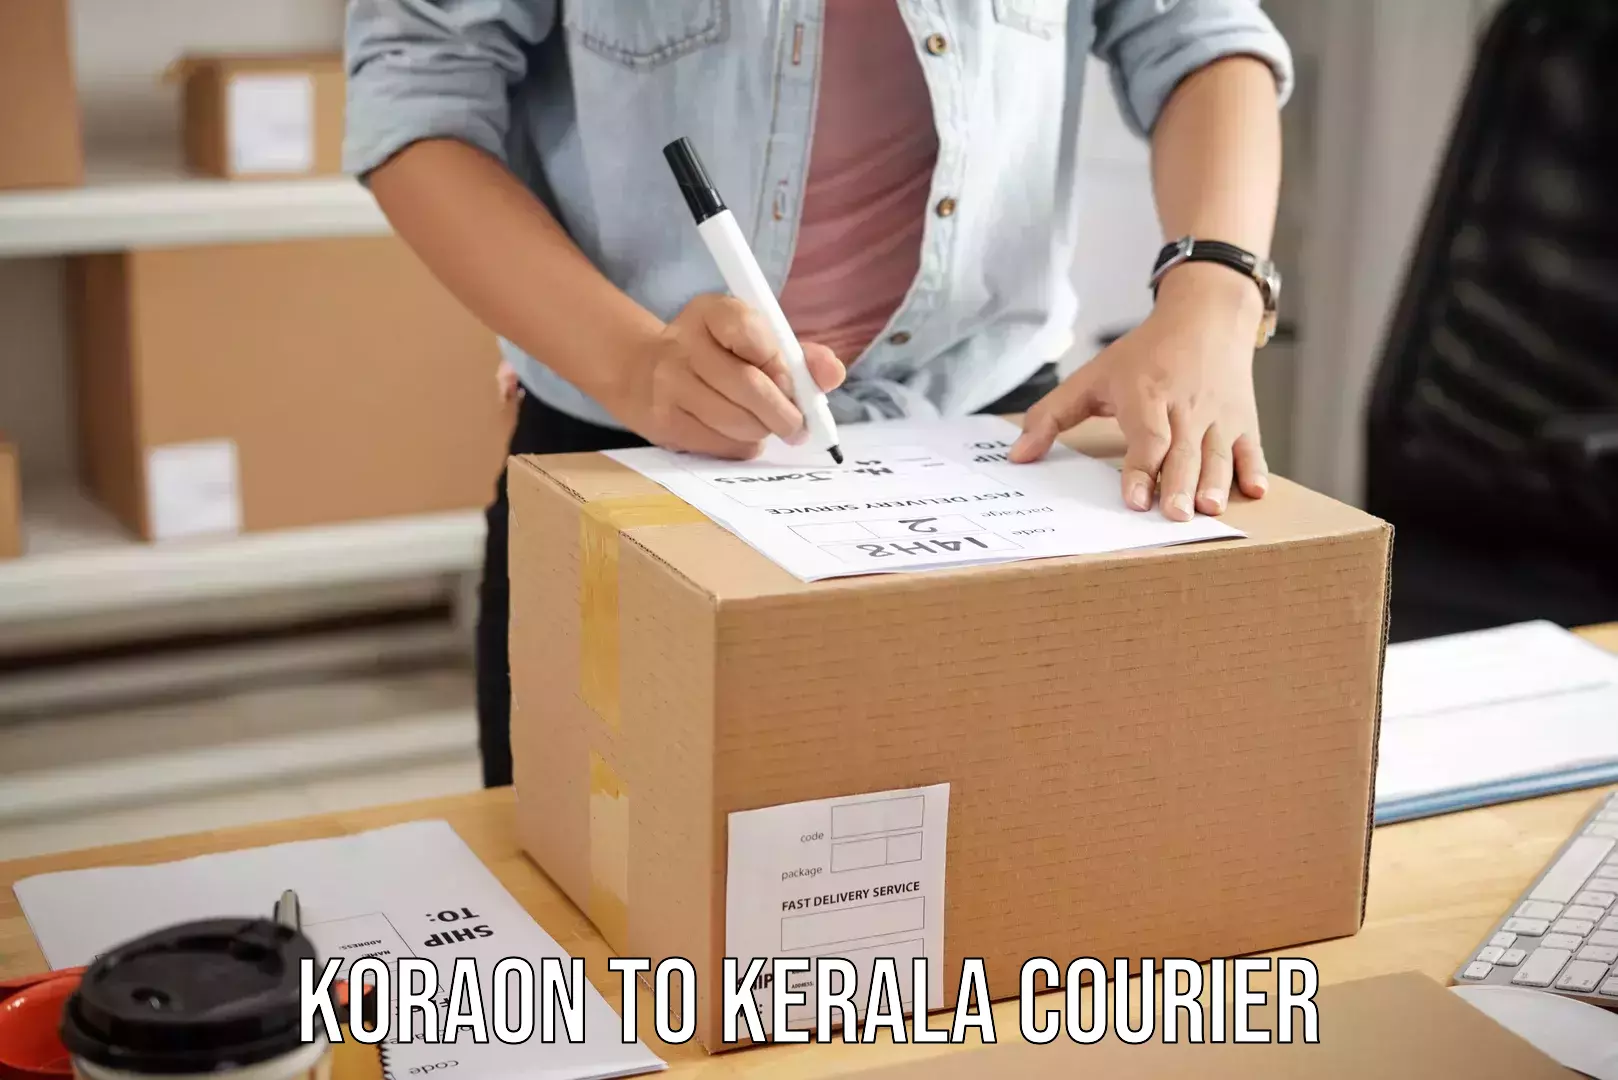 Automated luggage transport Koraon to Kerala